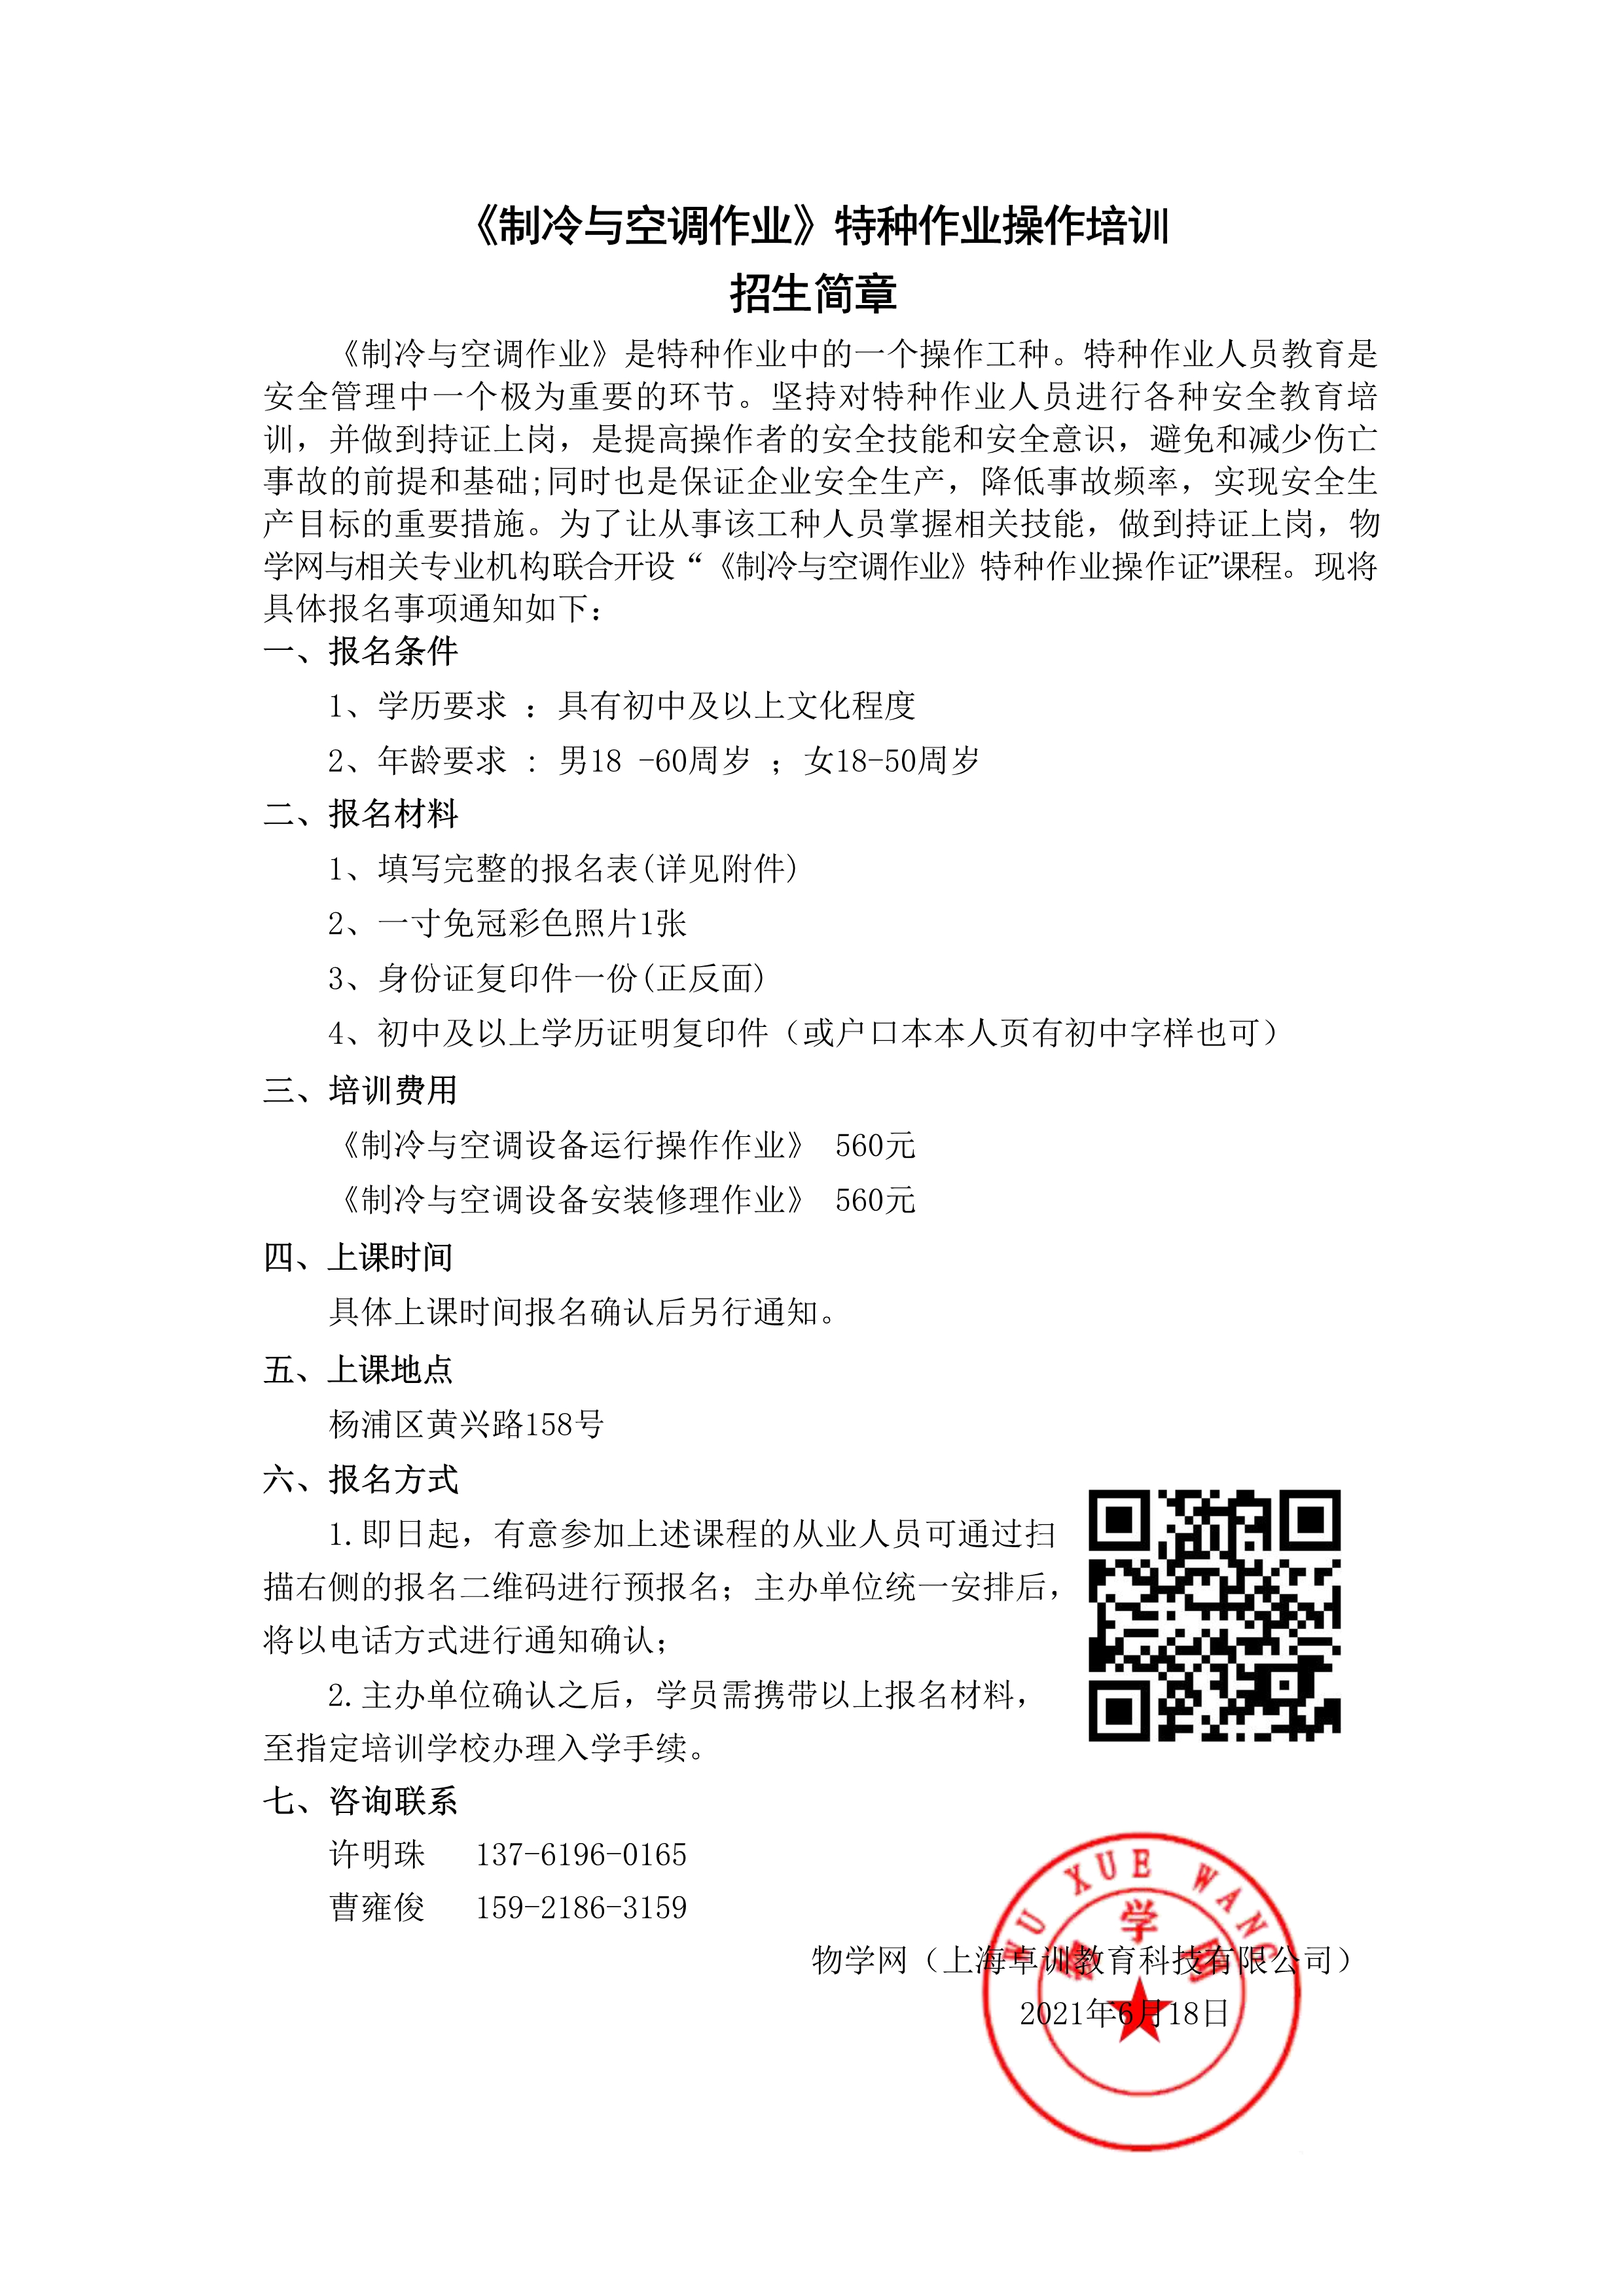 《制冷与空调作业》操作证培训招生简章（特种作业证）（杨浦）_1.jpg